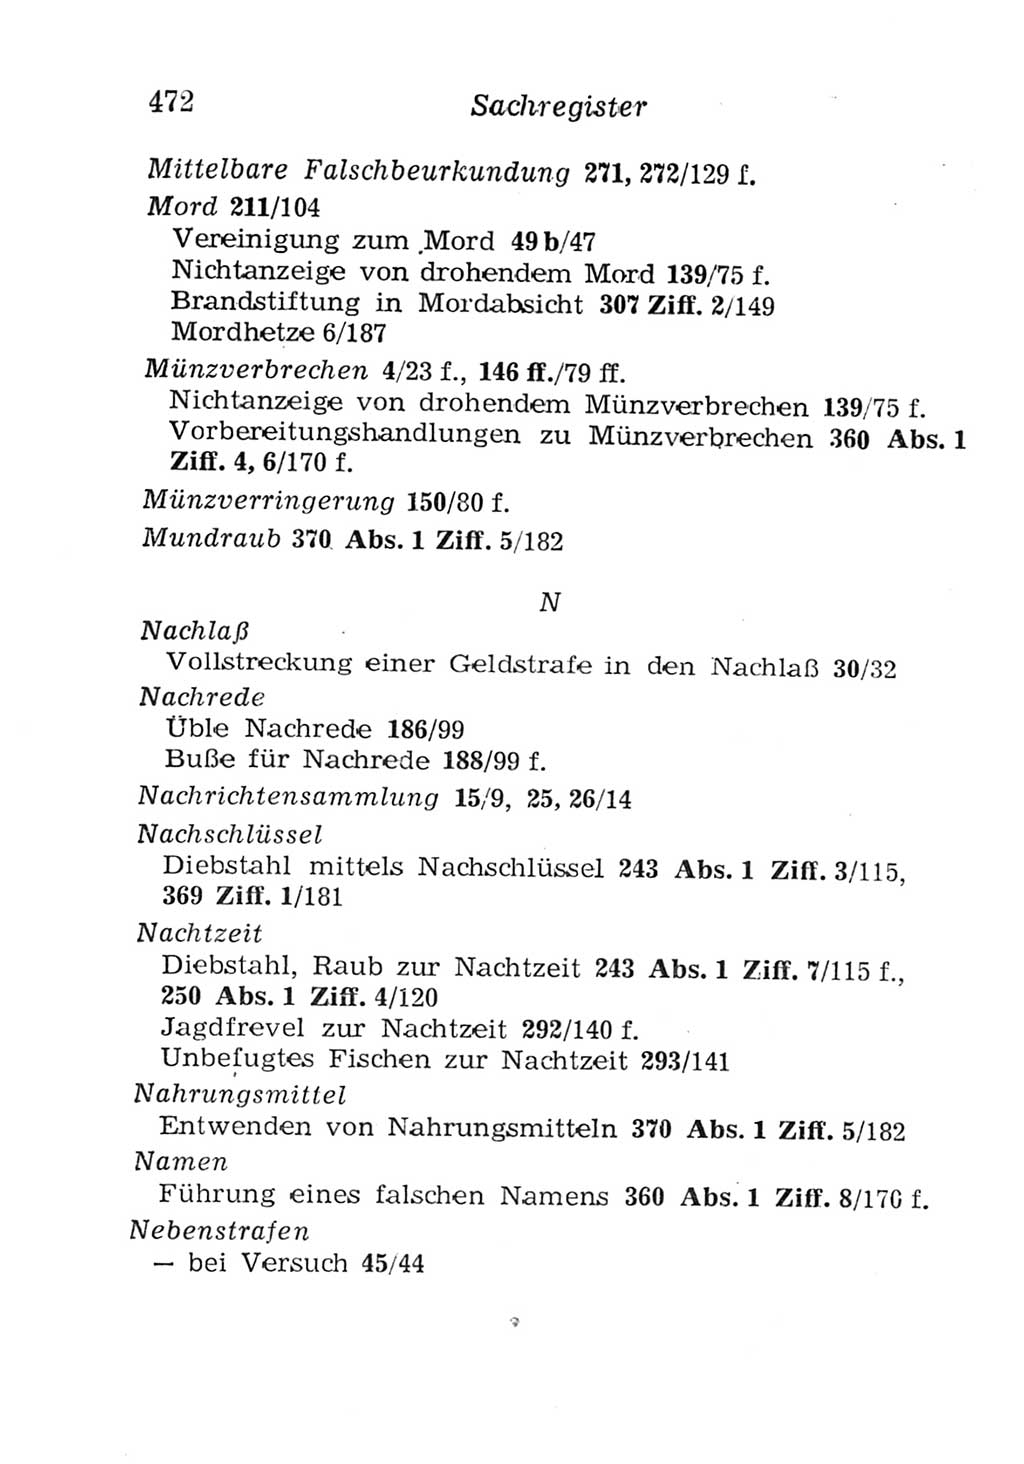 Strafgesetzbuch (StGB) und andere Strafgesetze [Deutsche Demokratische Republik (DDR)] 1957, Seite 472 (StGB Strafges. DDR 1957, S. 472)